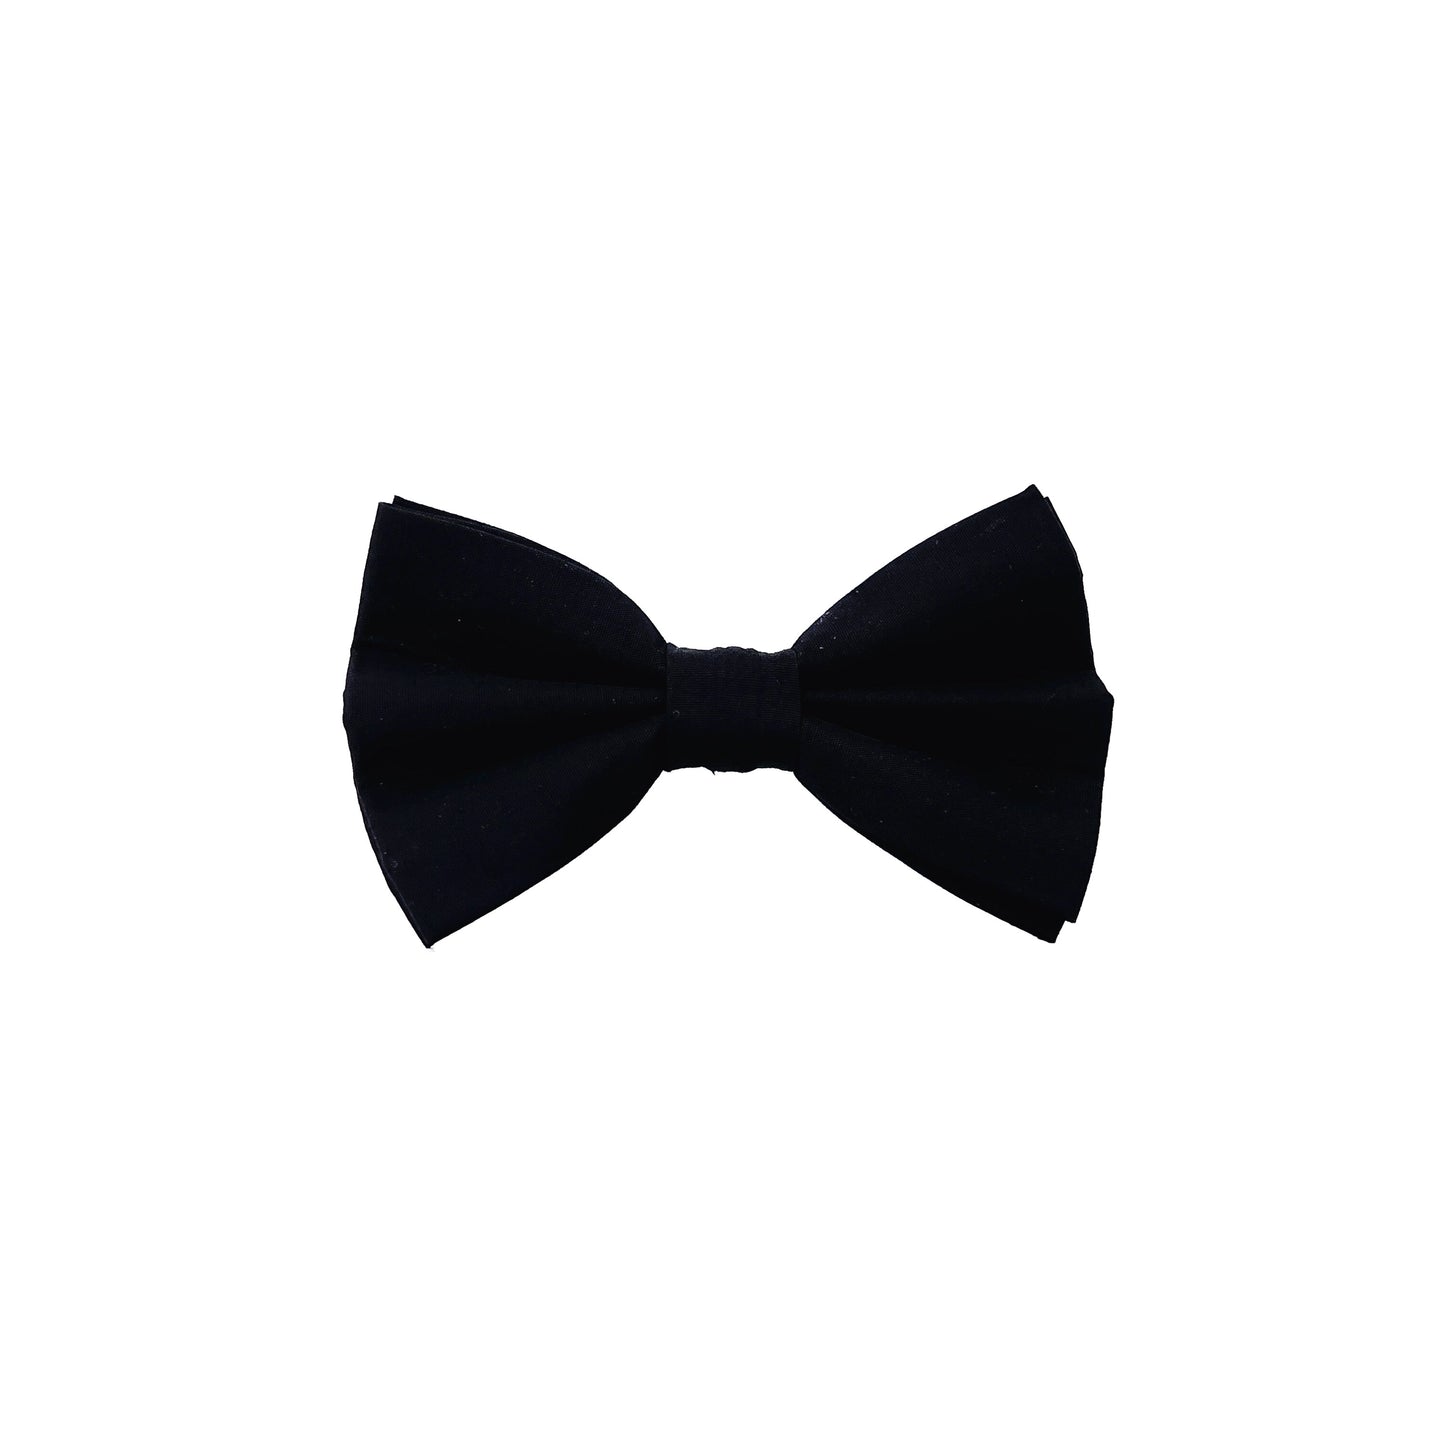 Cotton Bow Tie - Black Tie